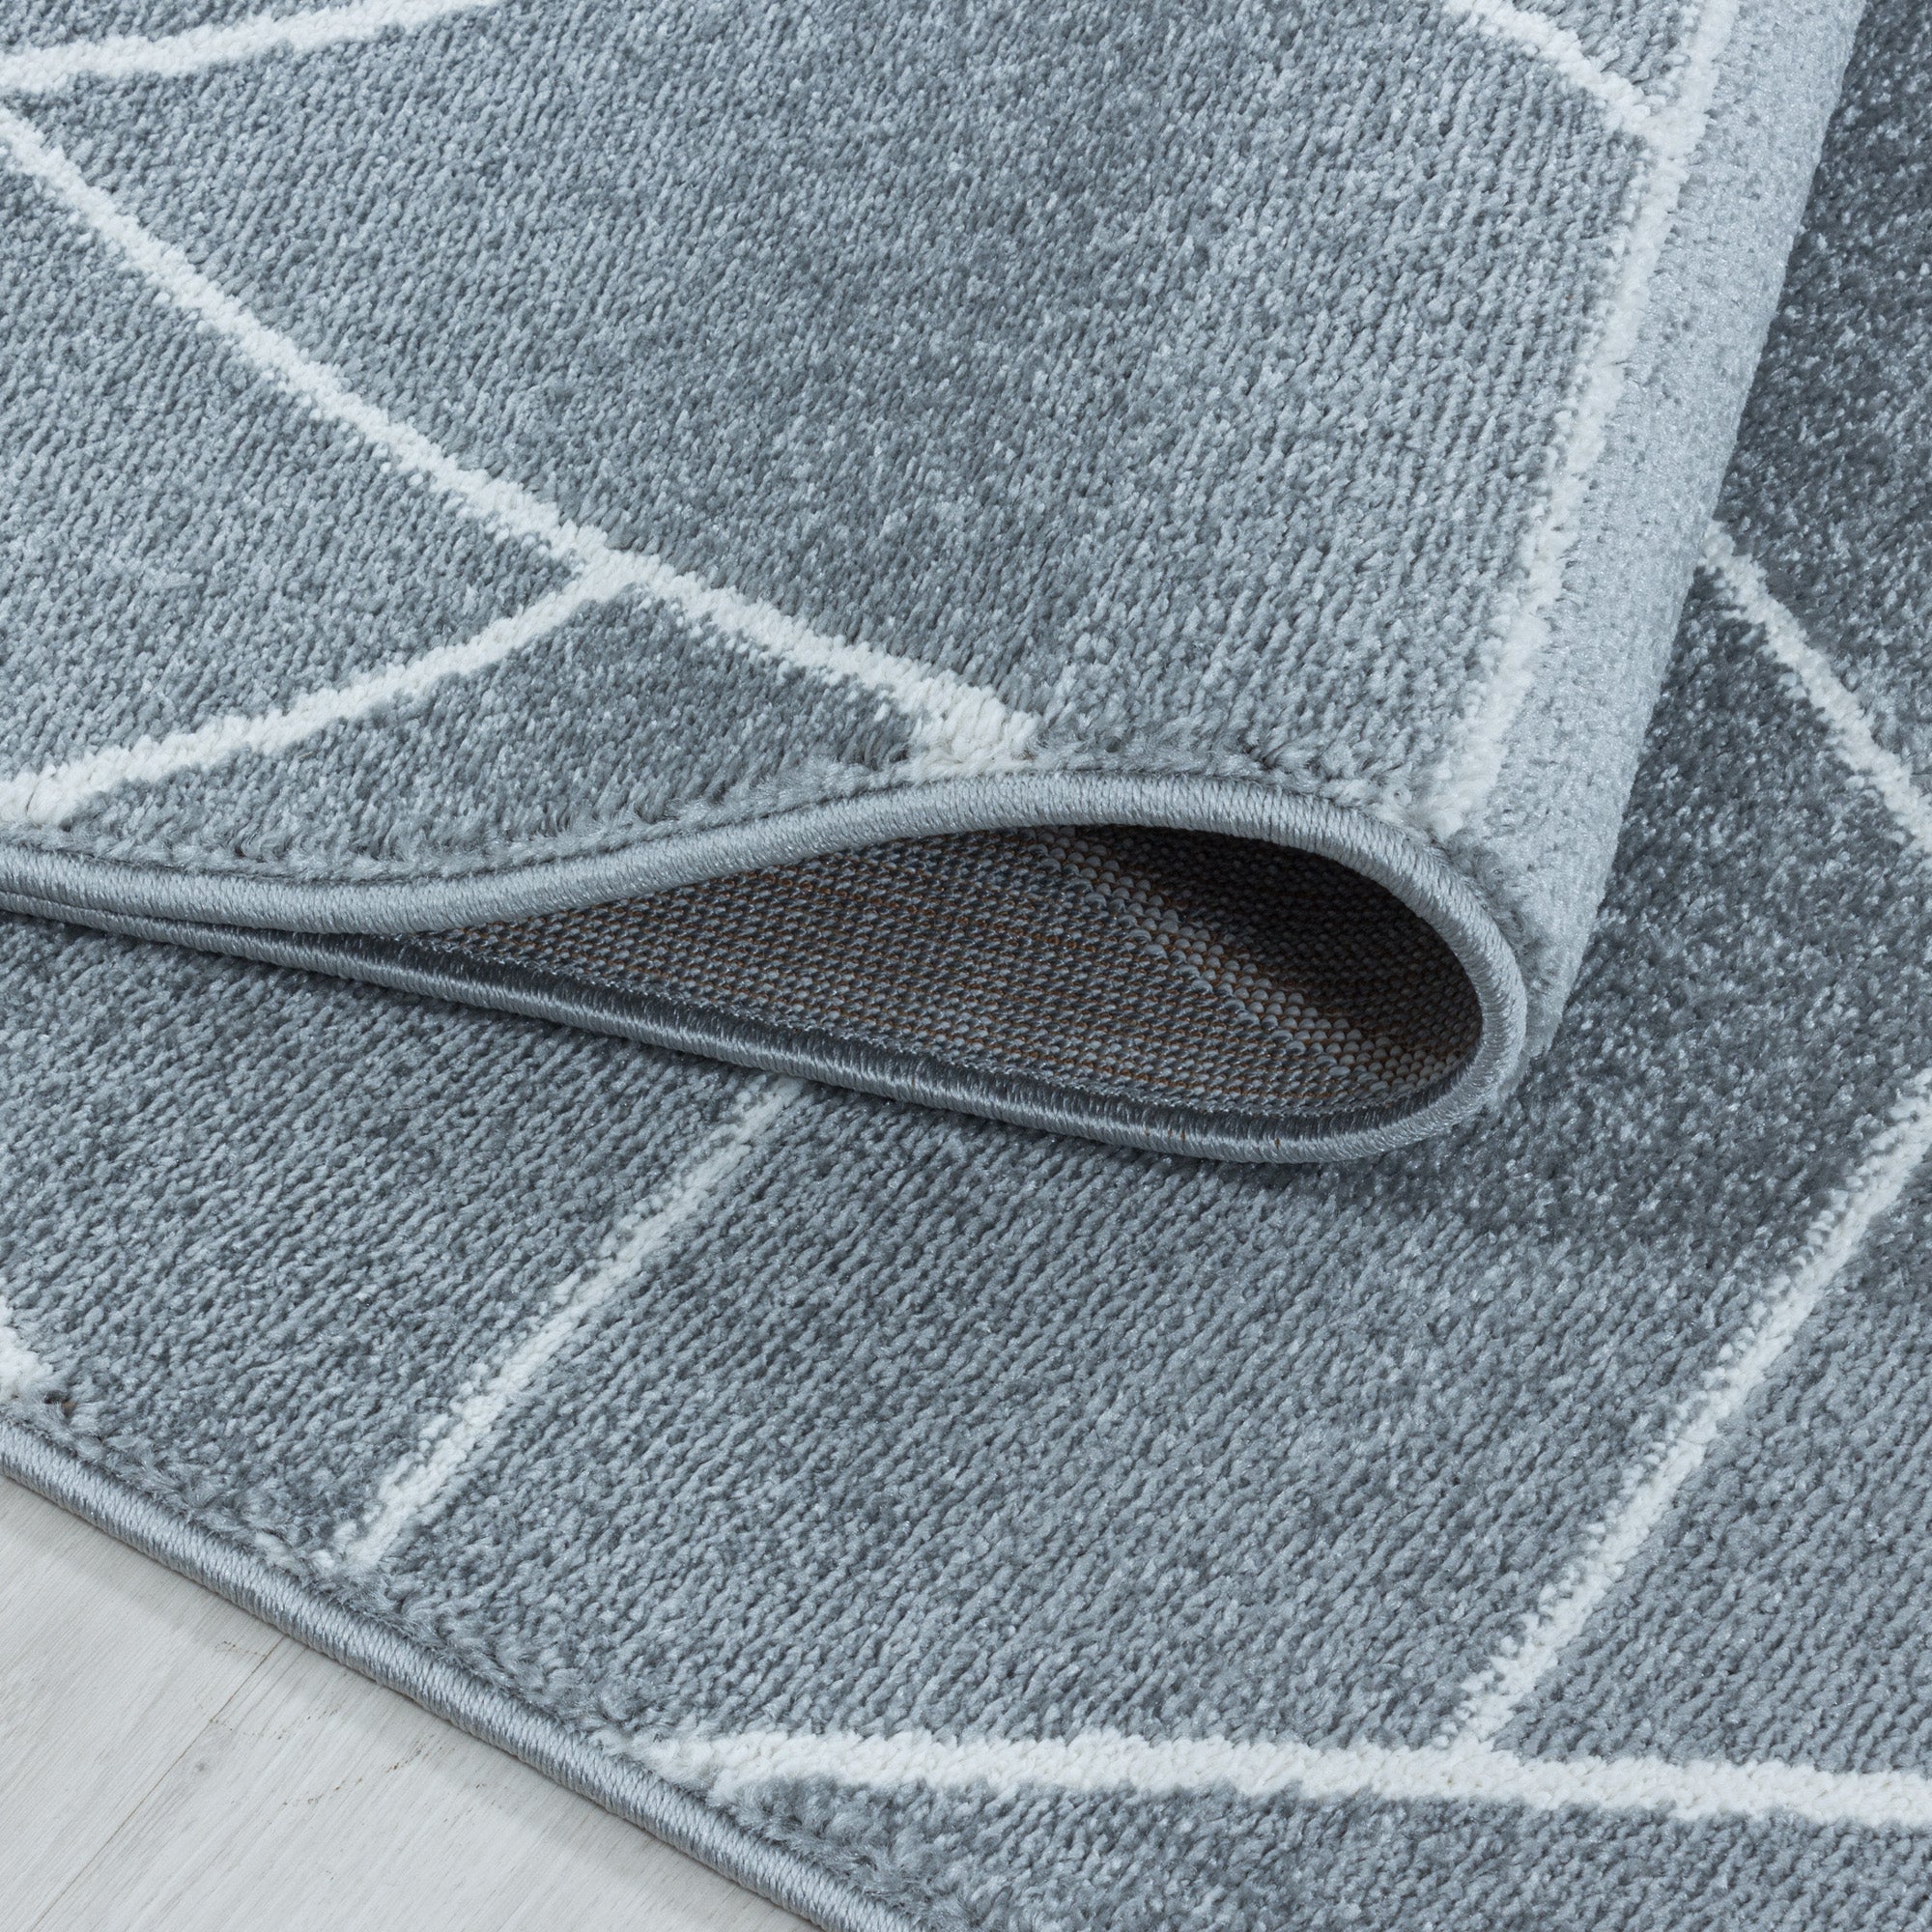 Designer Kurzflor Teppich Geometrisches Design Pflegeleicht Teppich Wohnzimmer